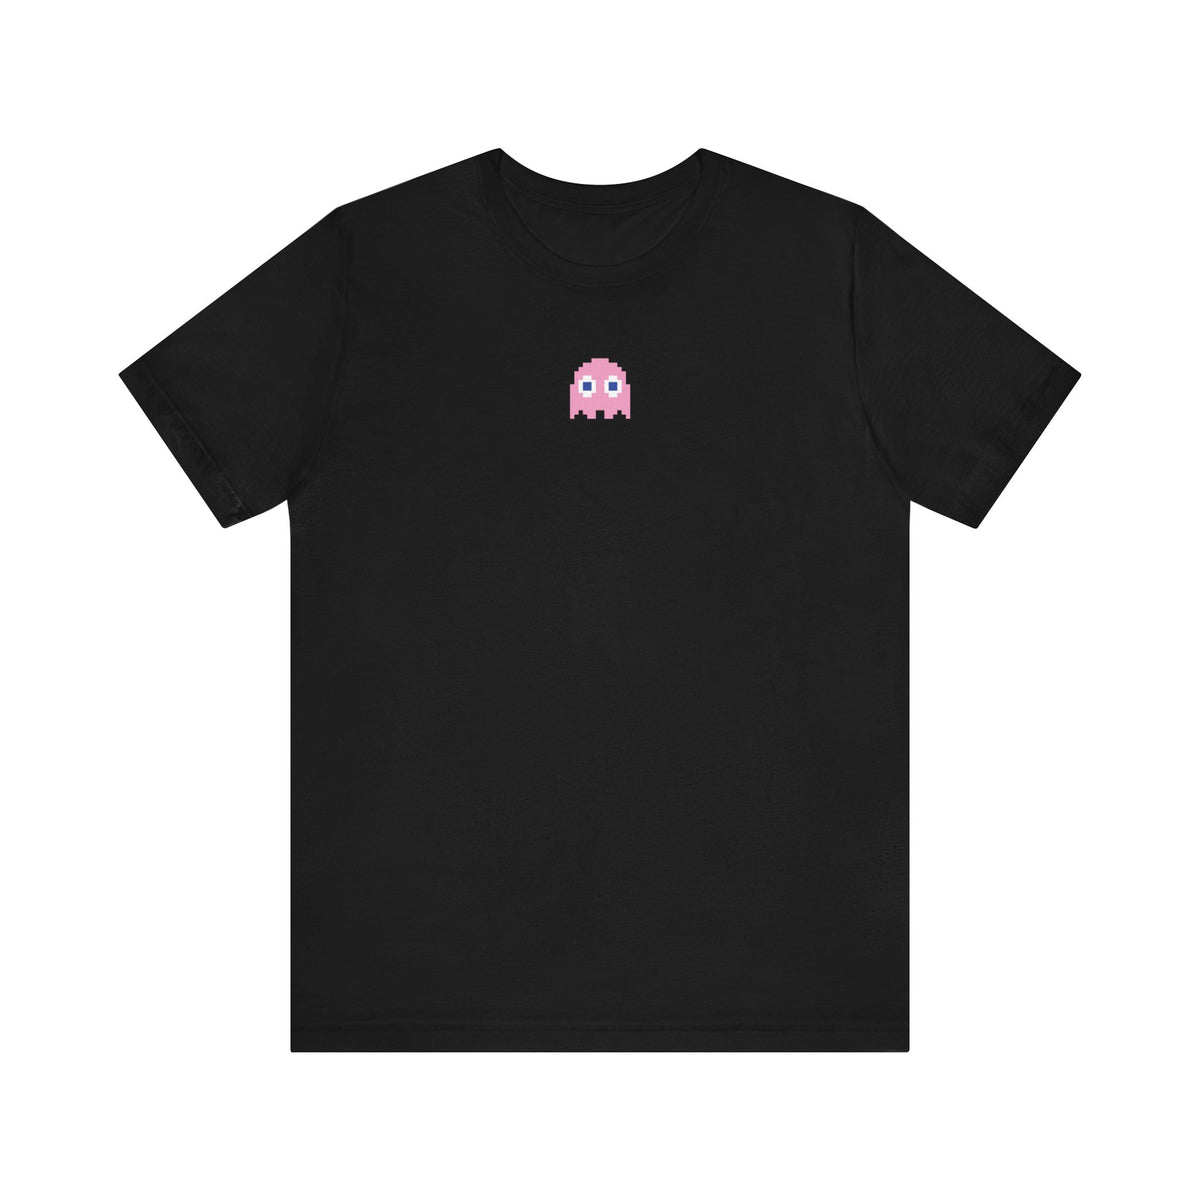 Pinky Tshirt SM